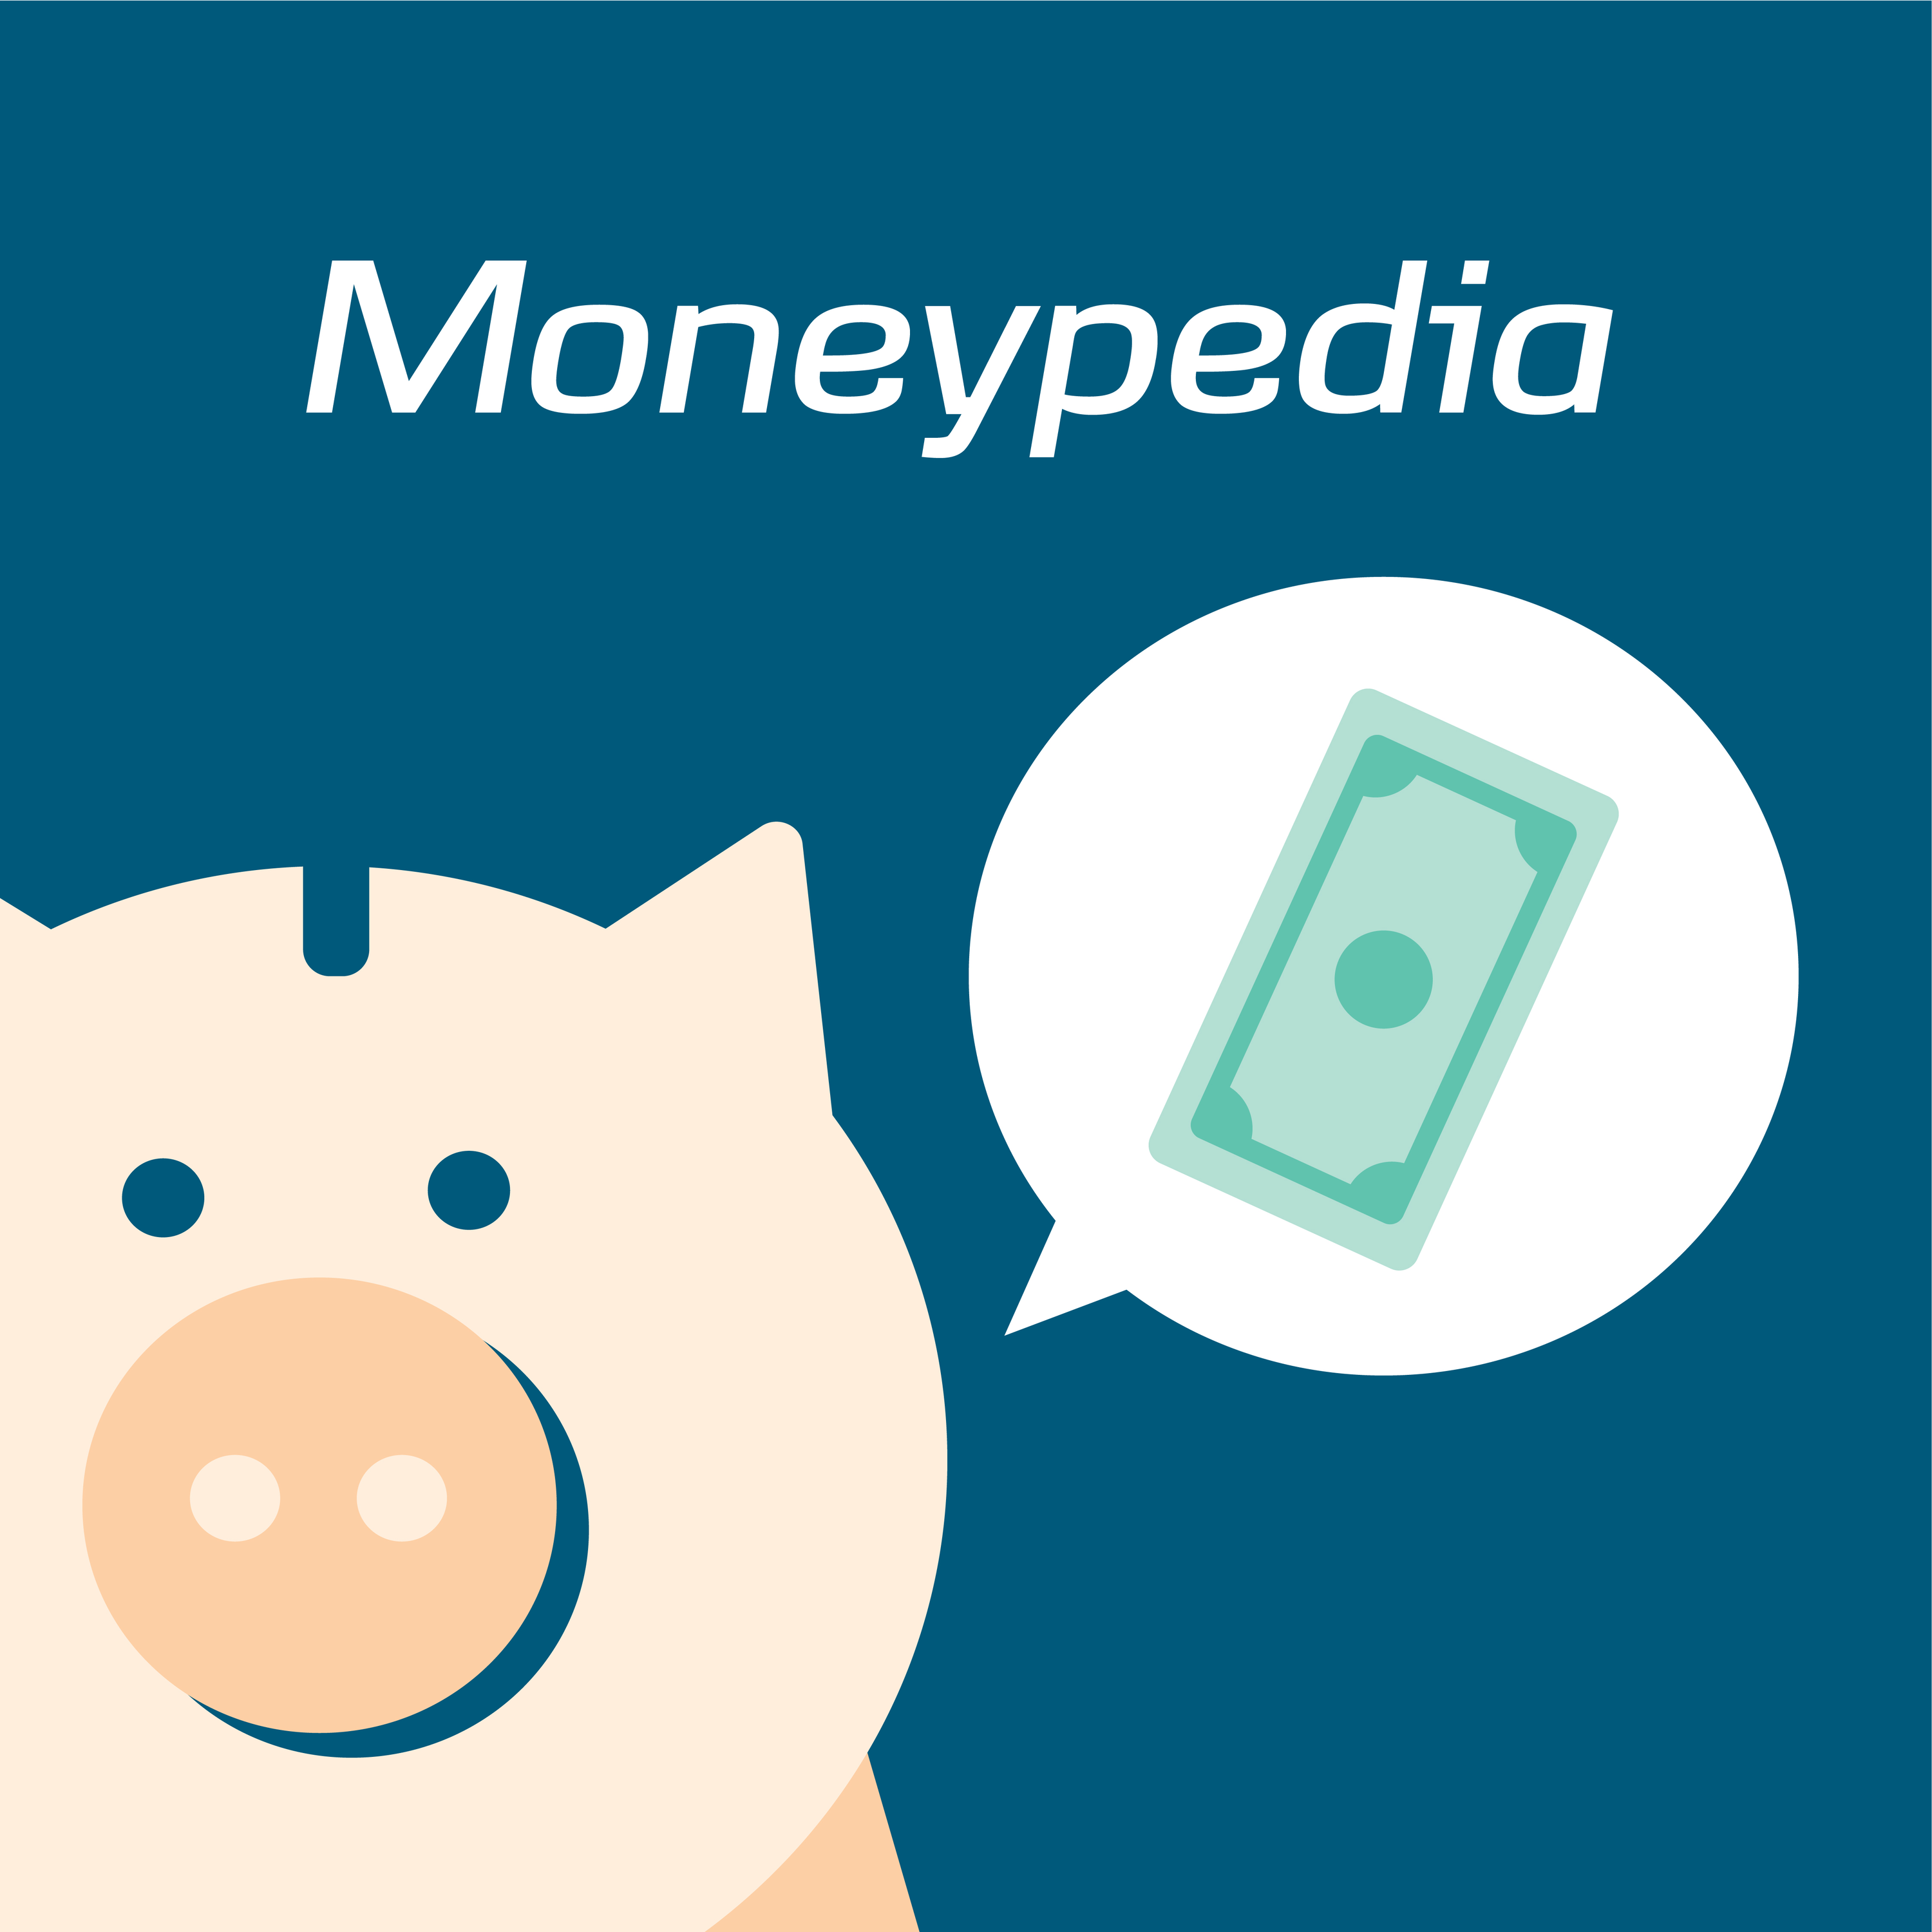 Moneypedia: Findes der en tank, der er lige så stor som Onkel Joakims?